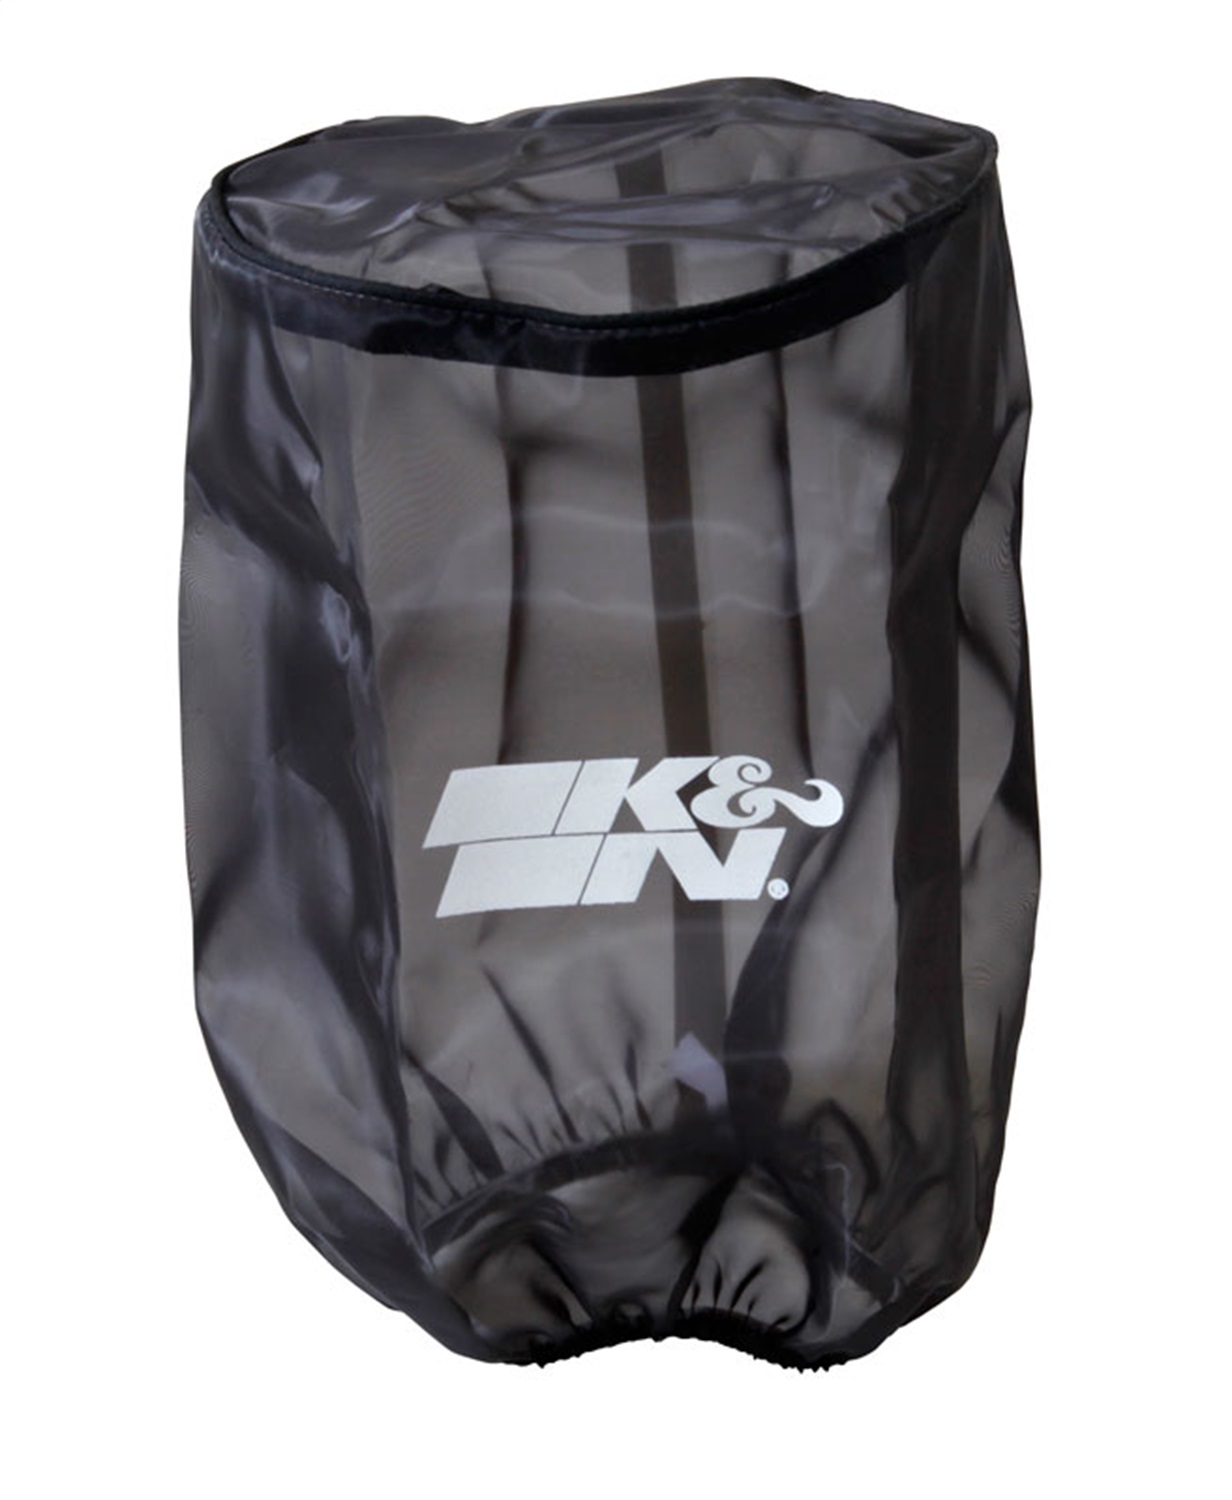 K&N Filters K&N Filters RU-5045DK DryCharger Filter Wrap